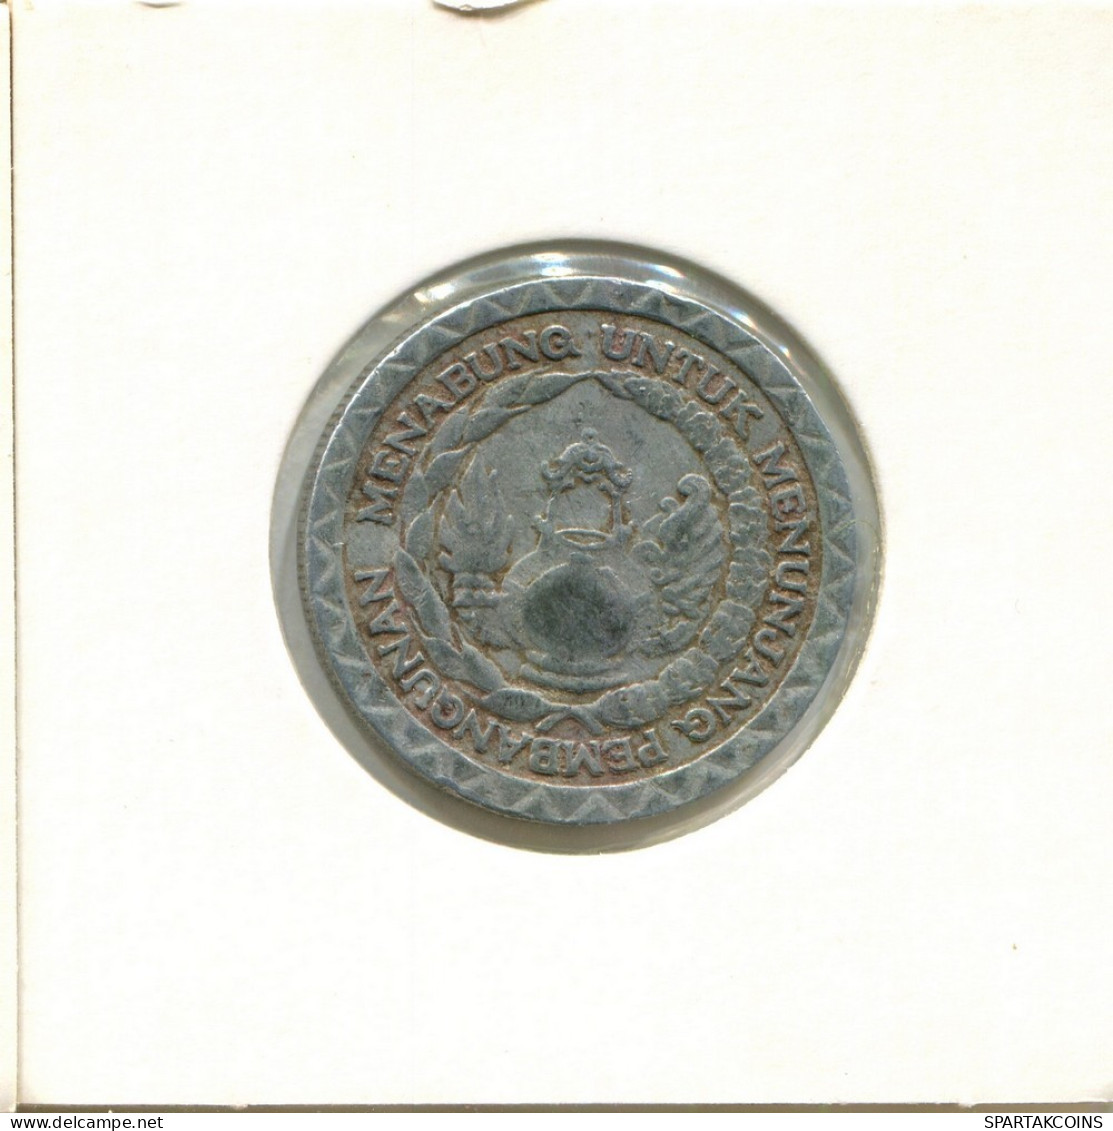 10 RUPIAH 1979 INDONESIA Coin #AY868.U.A - Indonesia